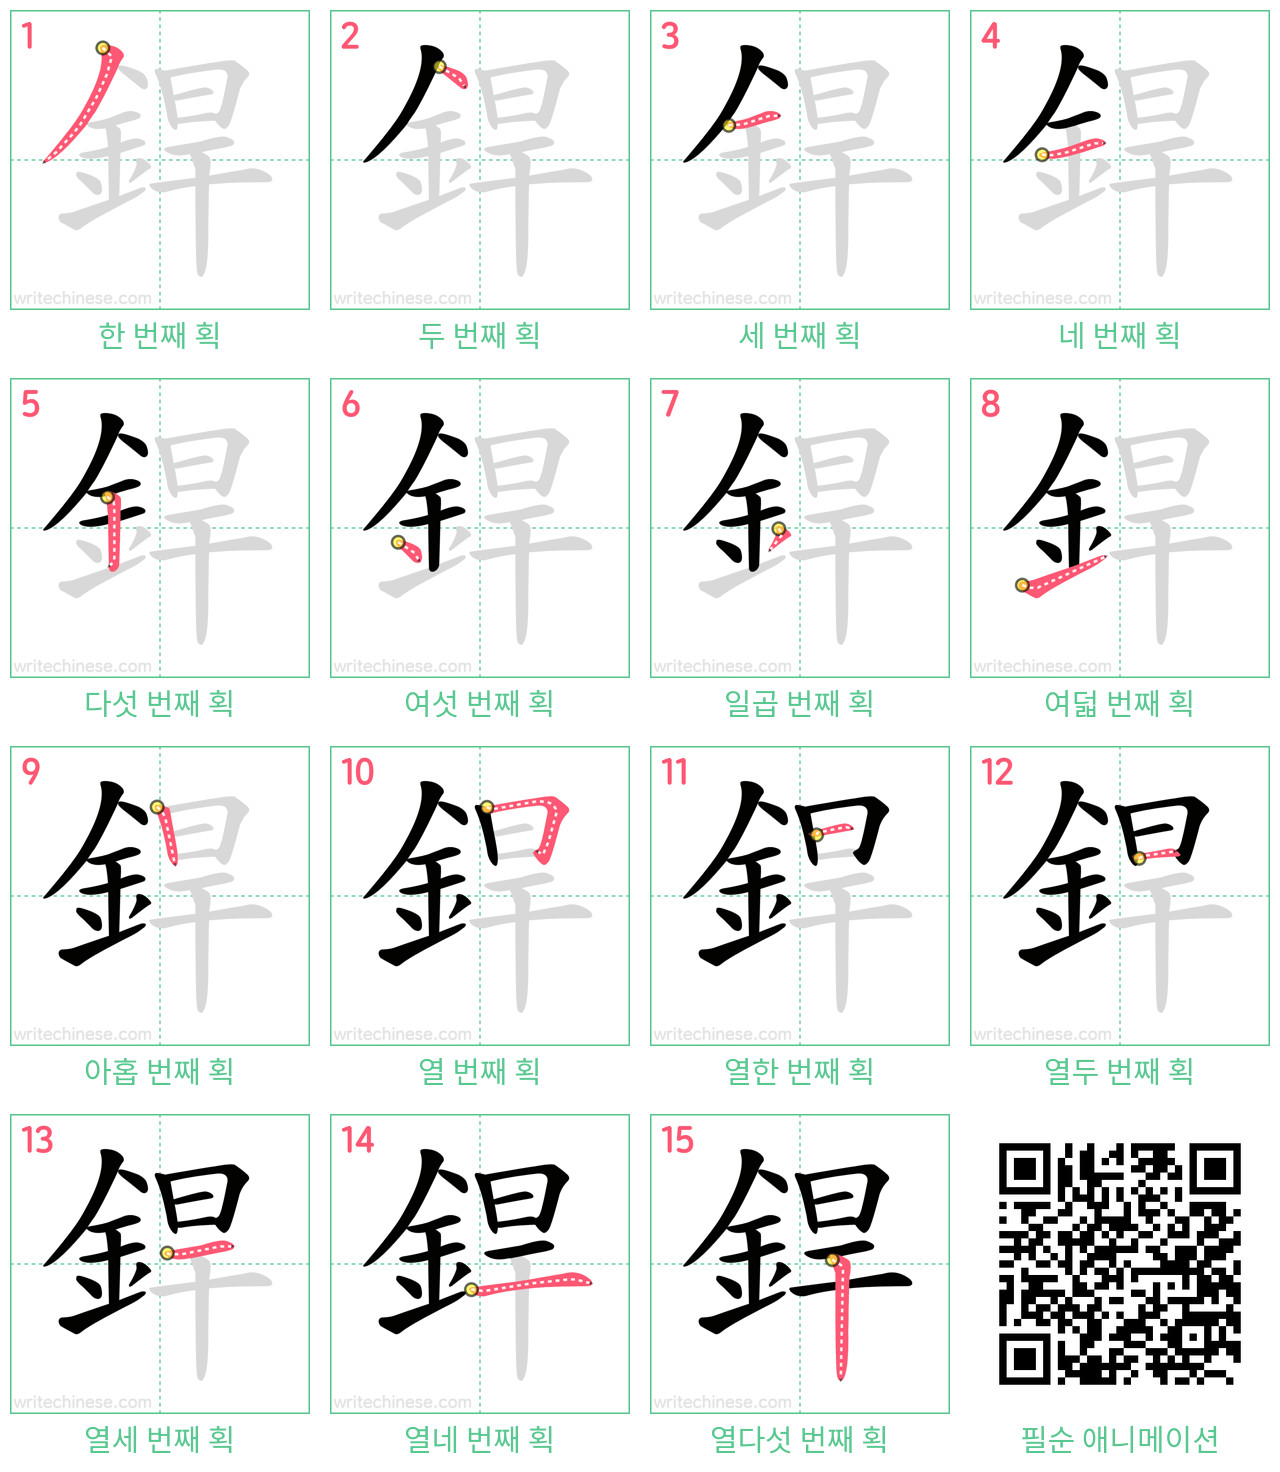 銲 step-by-step stroke order diagrams